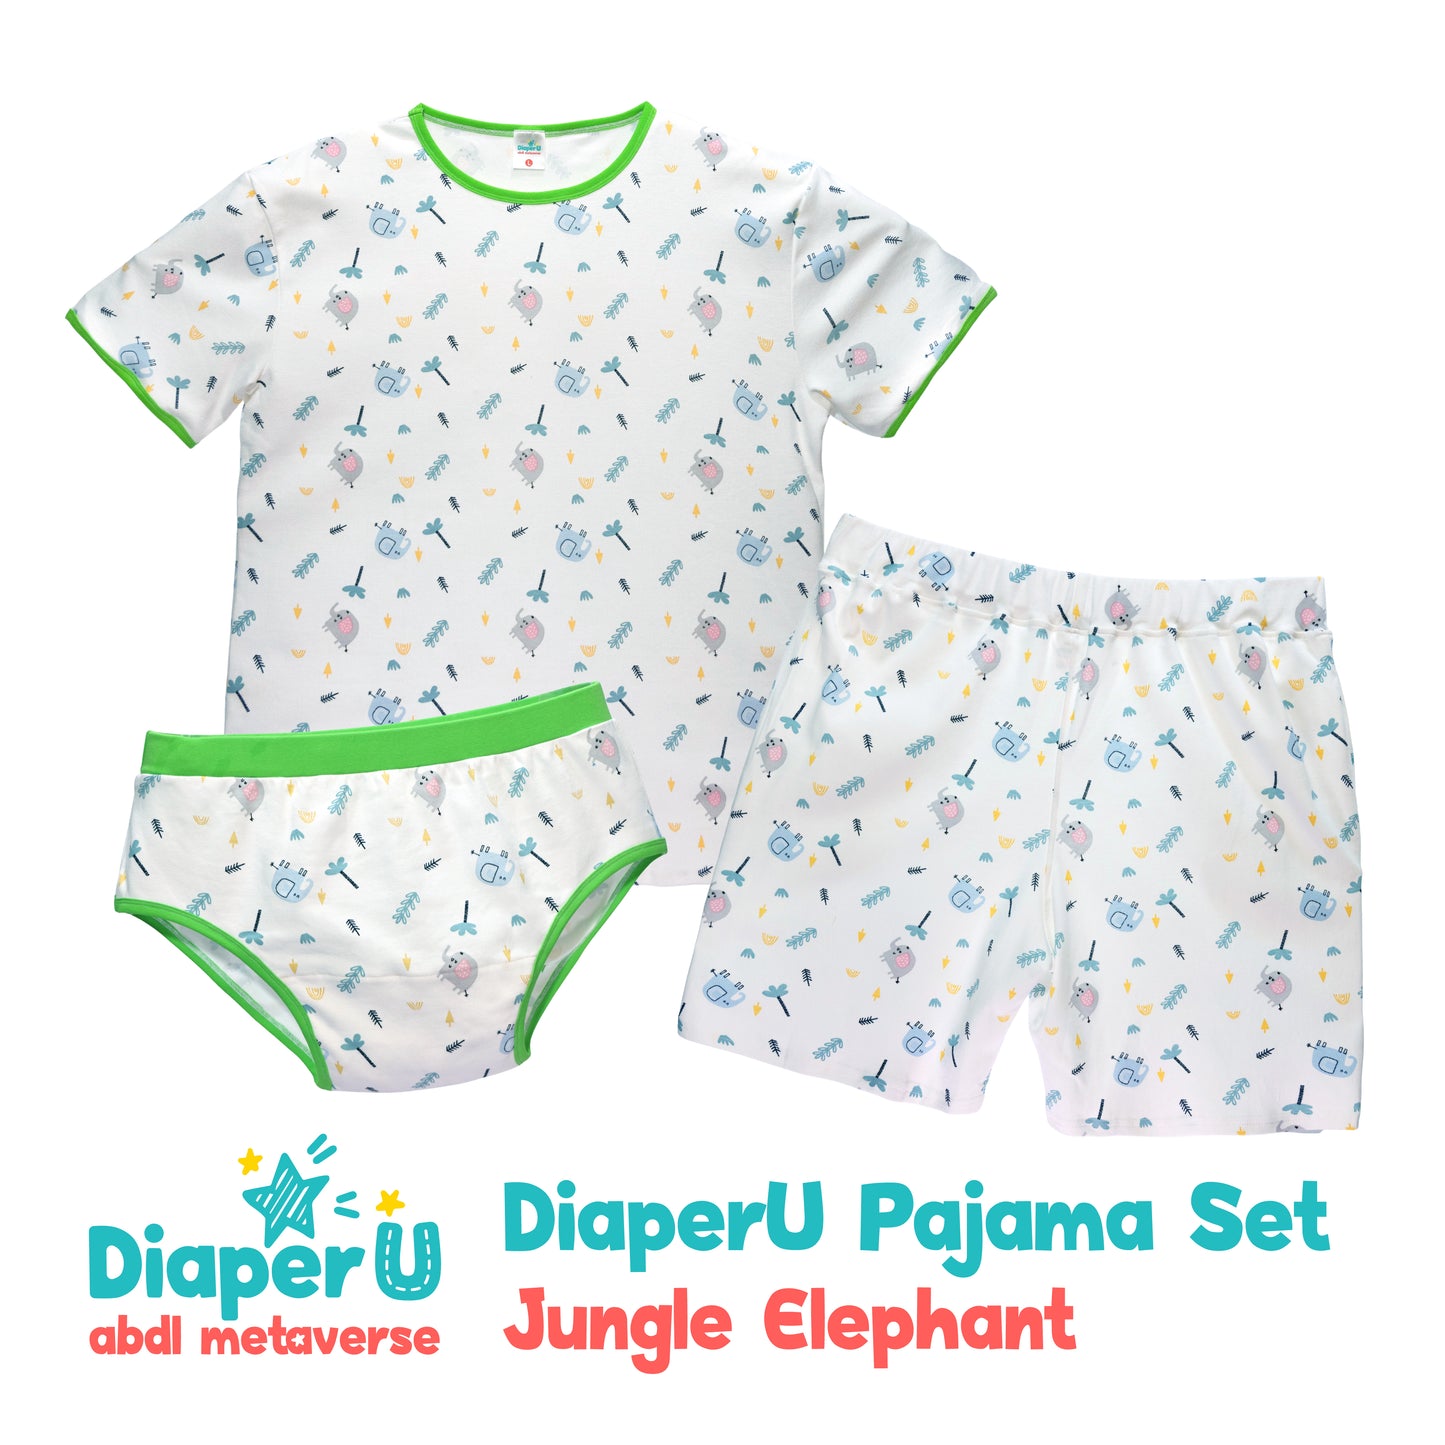 ABDL Cotton Baby Briefs - Jungle Elephant (Unisex)